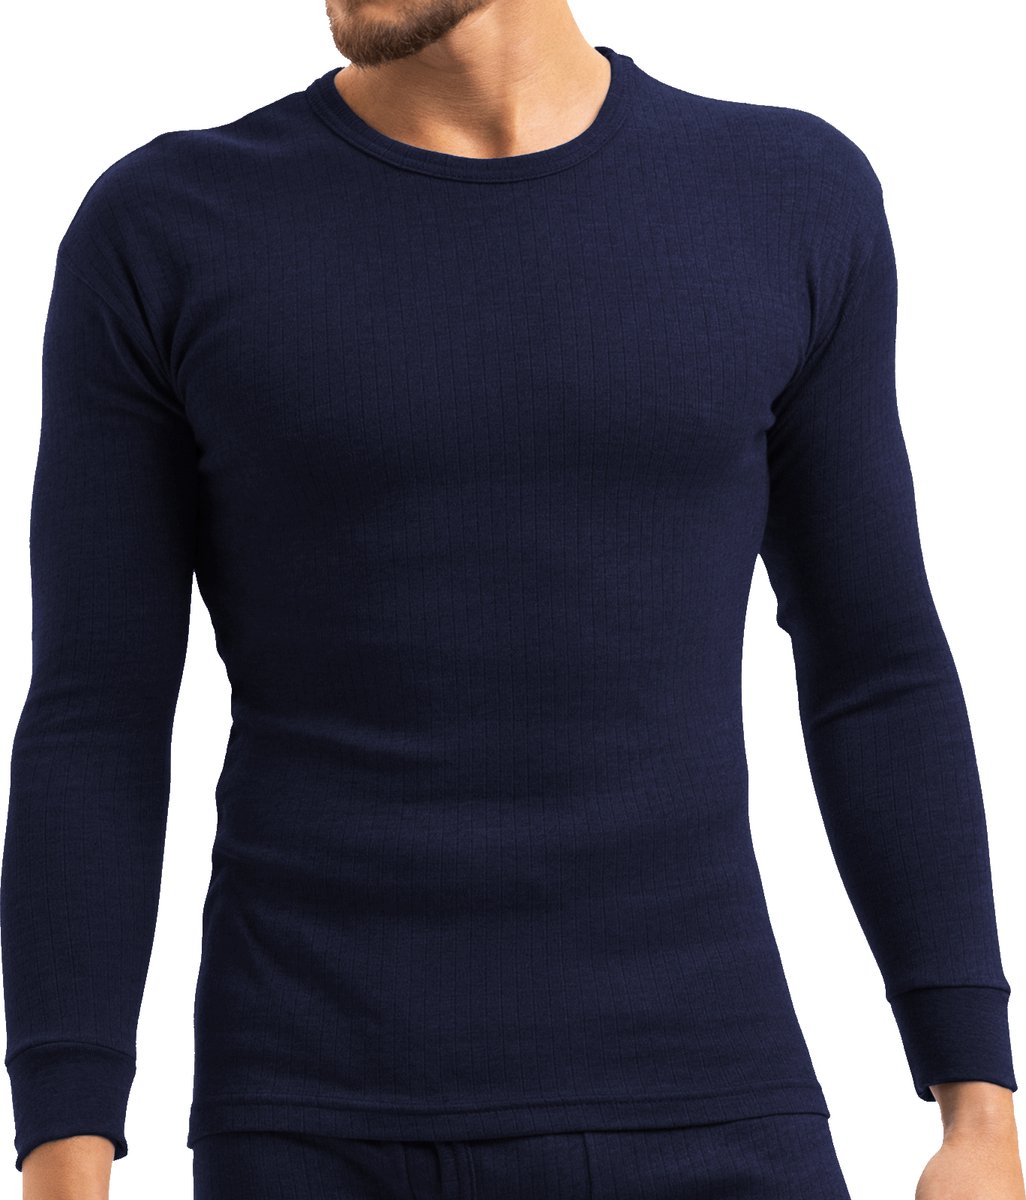 Heat Booster - Thermoshirt heren - met fleece gevoerd - Navy Blauw - XL - Heatbooster